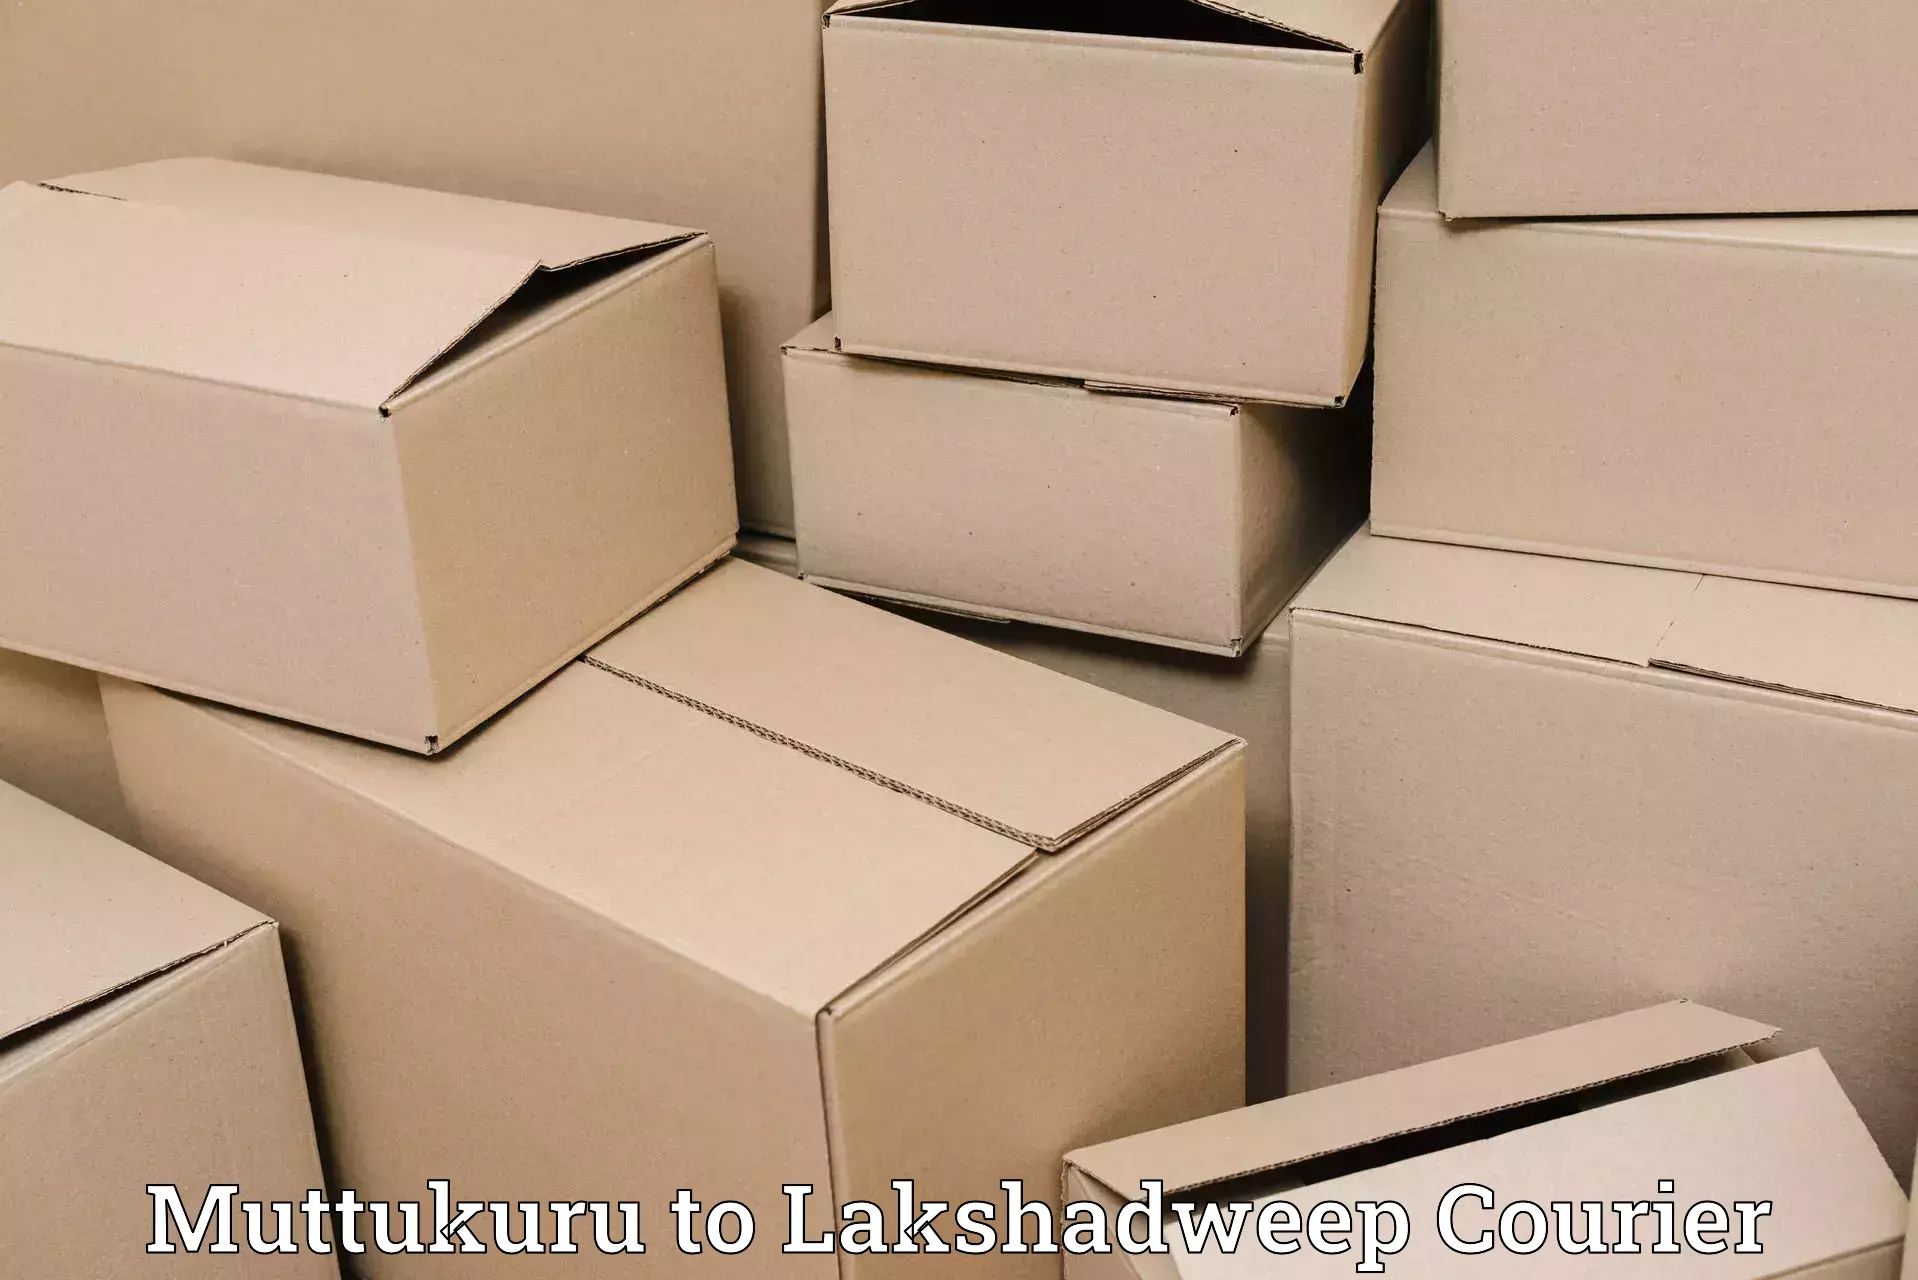 Nationwide shipping capabilities Muttukuru to Lakshadweep